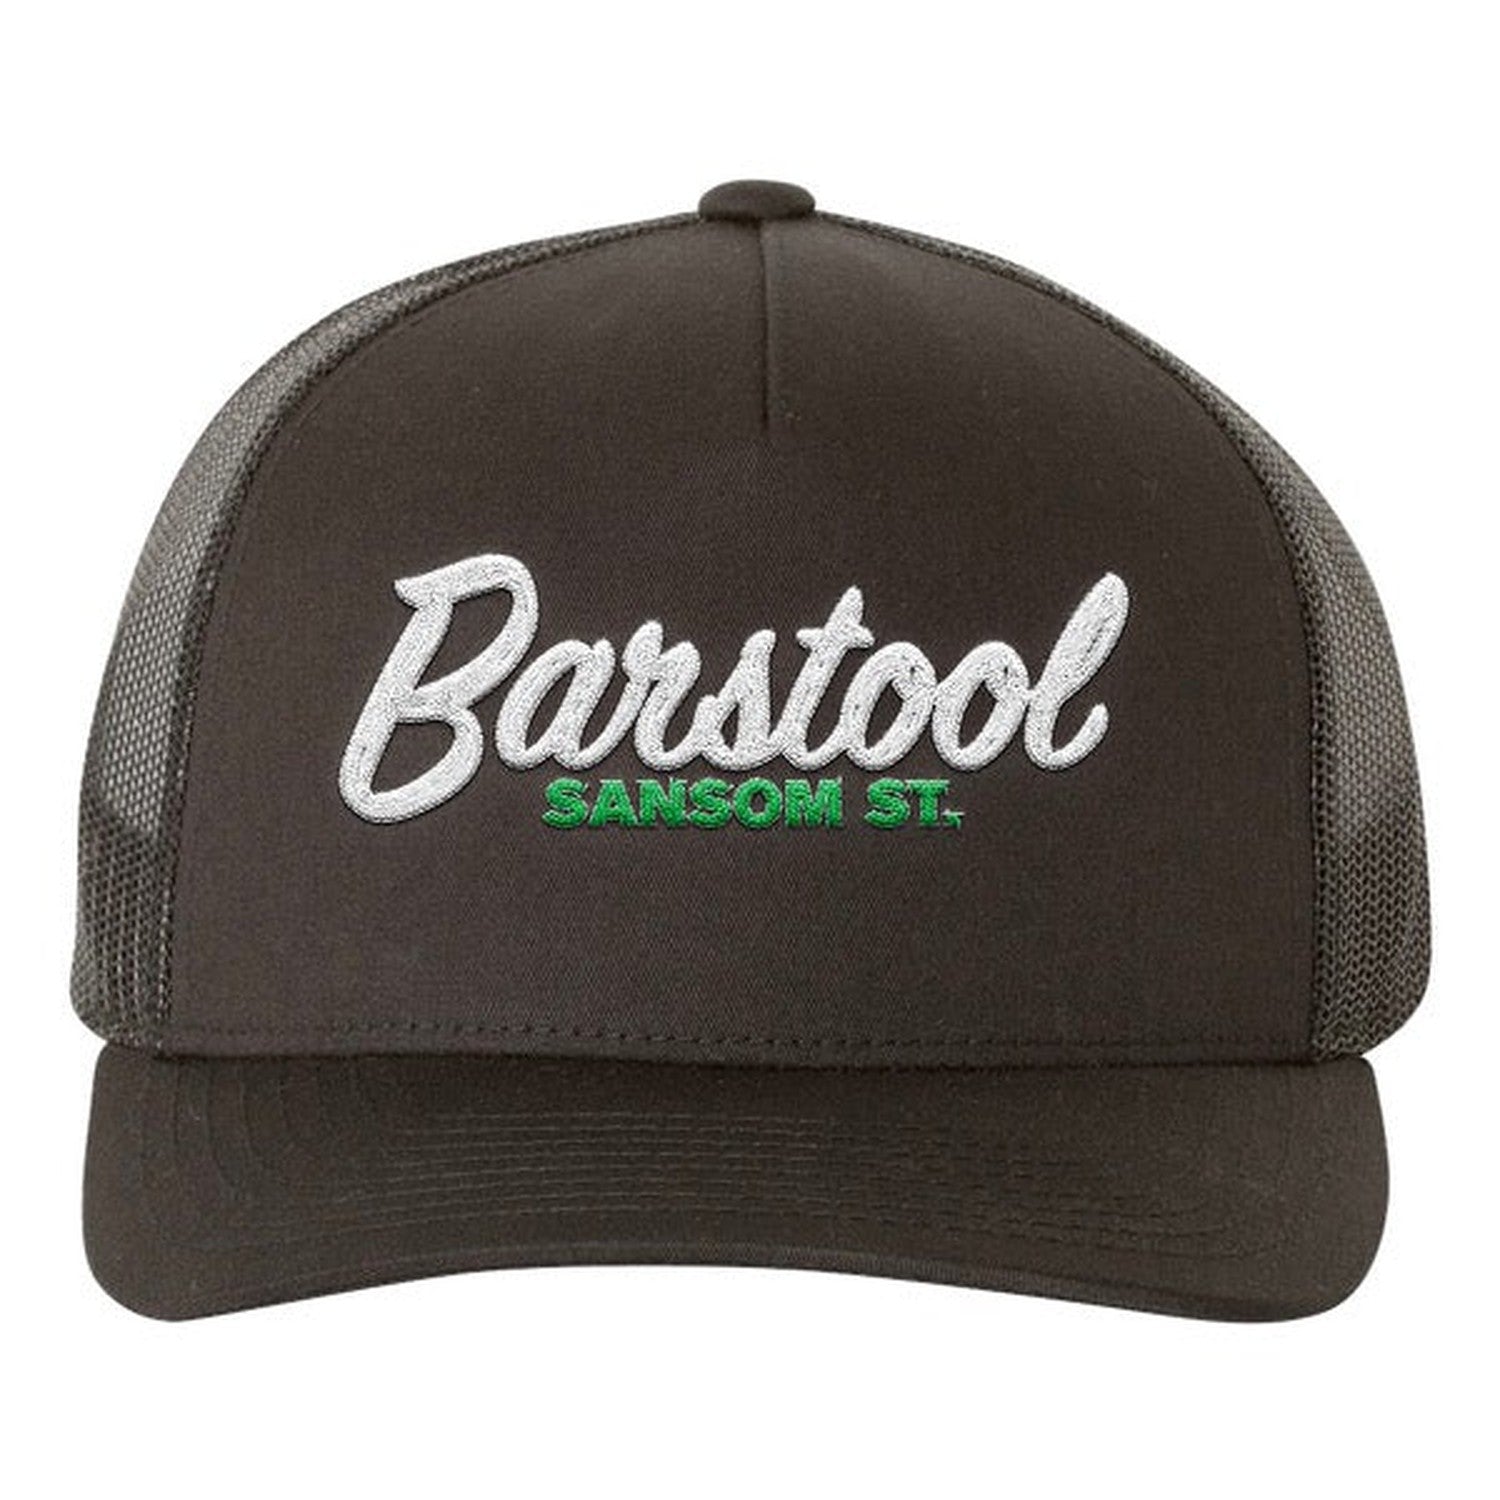 Barstool Sansom St. Trucker Hat